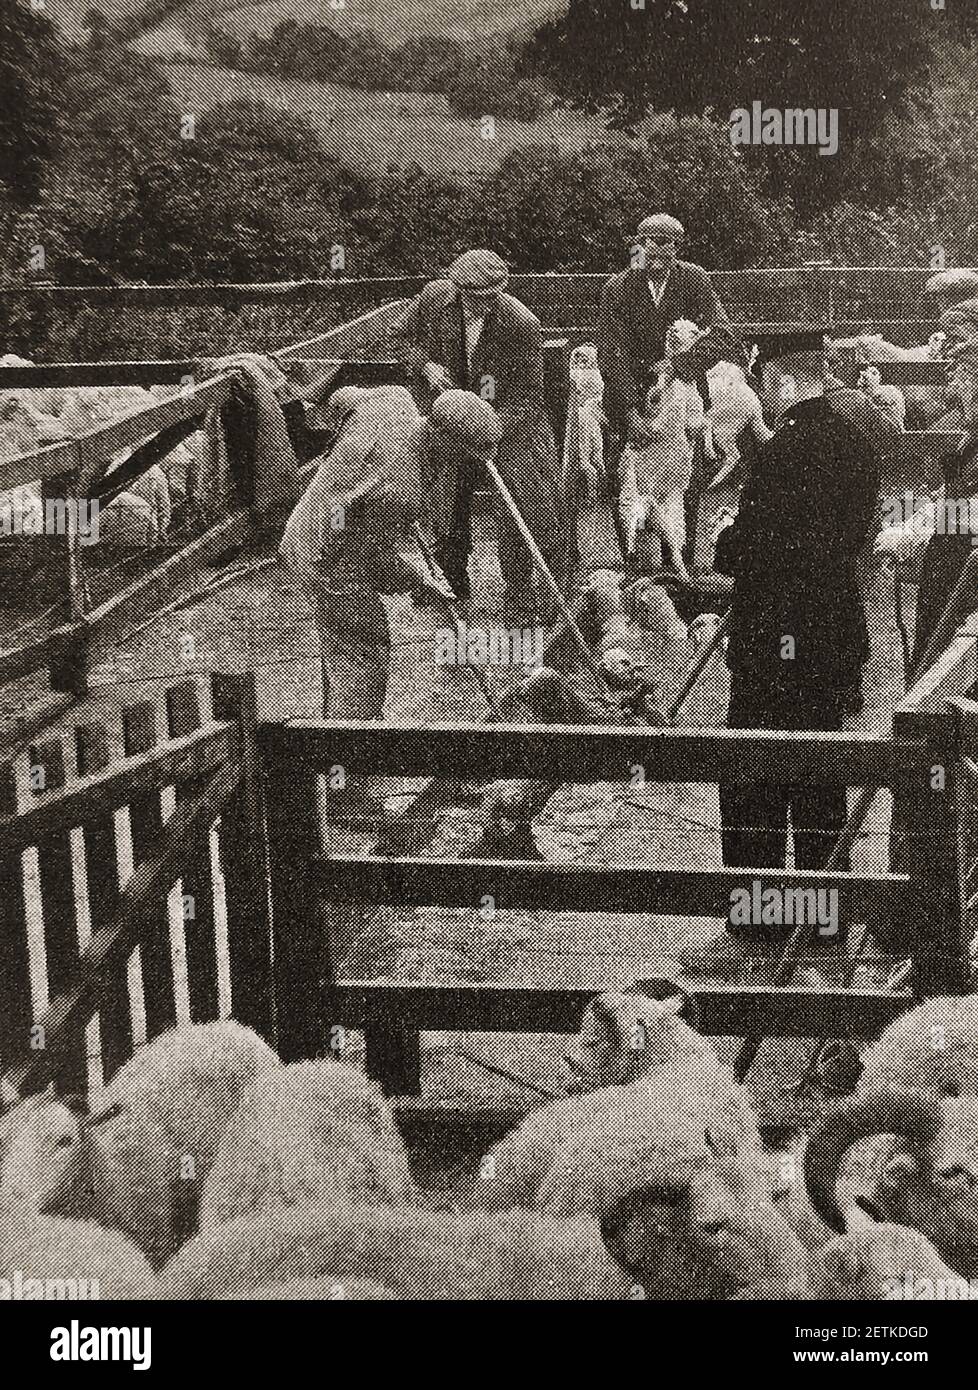 Una vecchia foto della stampa che mostra le pecore che si tuffano in Galles durante un focolaio di afta epizootica, sotto la supervisione di un poliziotto. Foto Stock